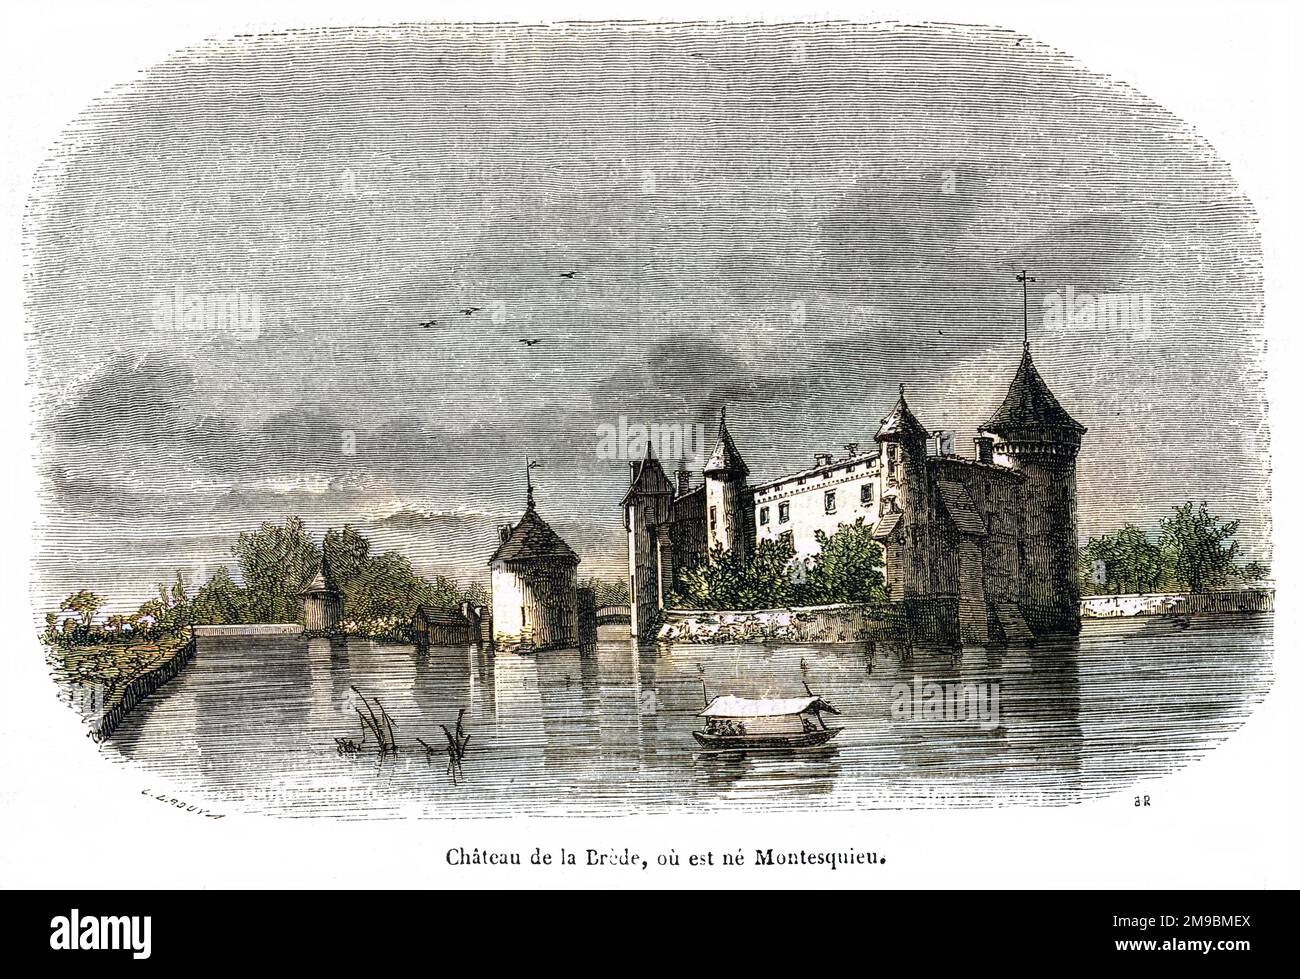 Der französische Philosoph MONTESQUIEU wurde hier im Chateau de la Brede geboren, in der Gironde. Alles sehr malerisch, aber im Winter wahrscheinlich feucht. Stockfoto